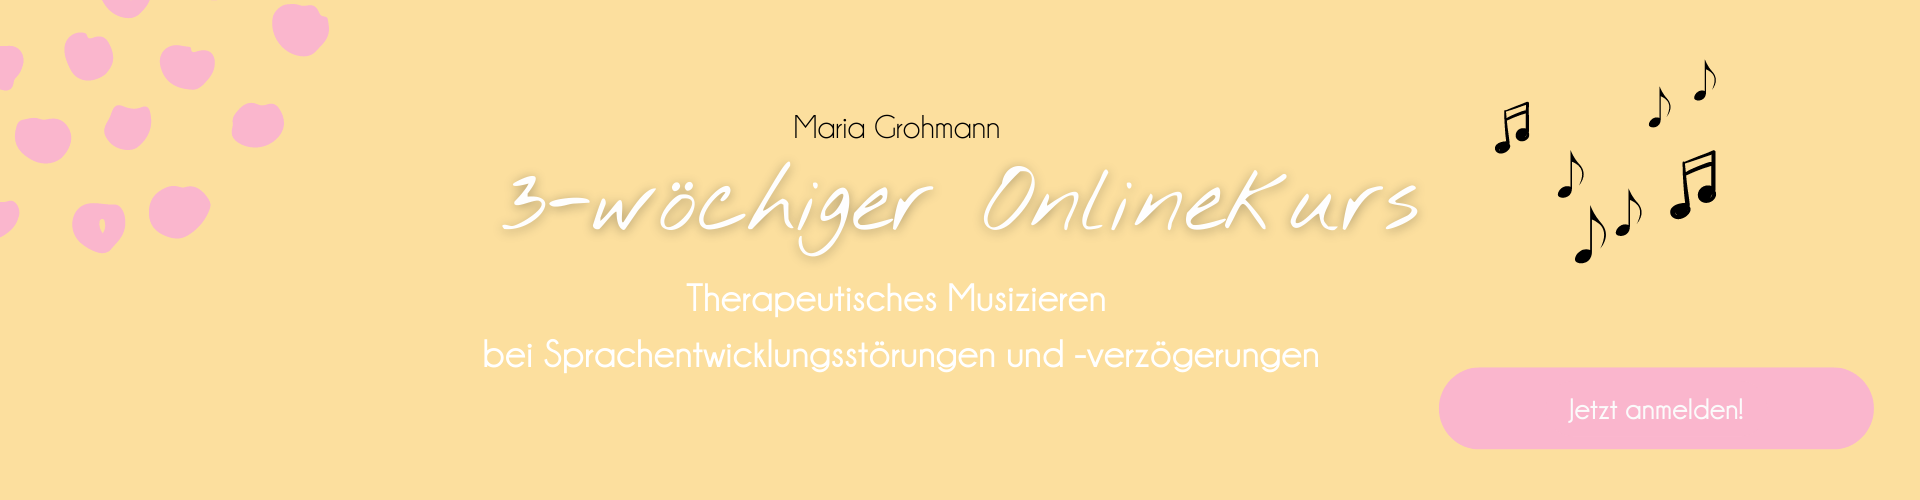 Therapeutisches Musizieren in der Logopädie - Maria Grohmann - Onlinekurs